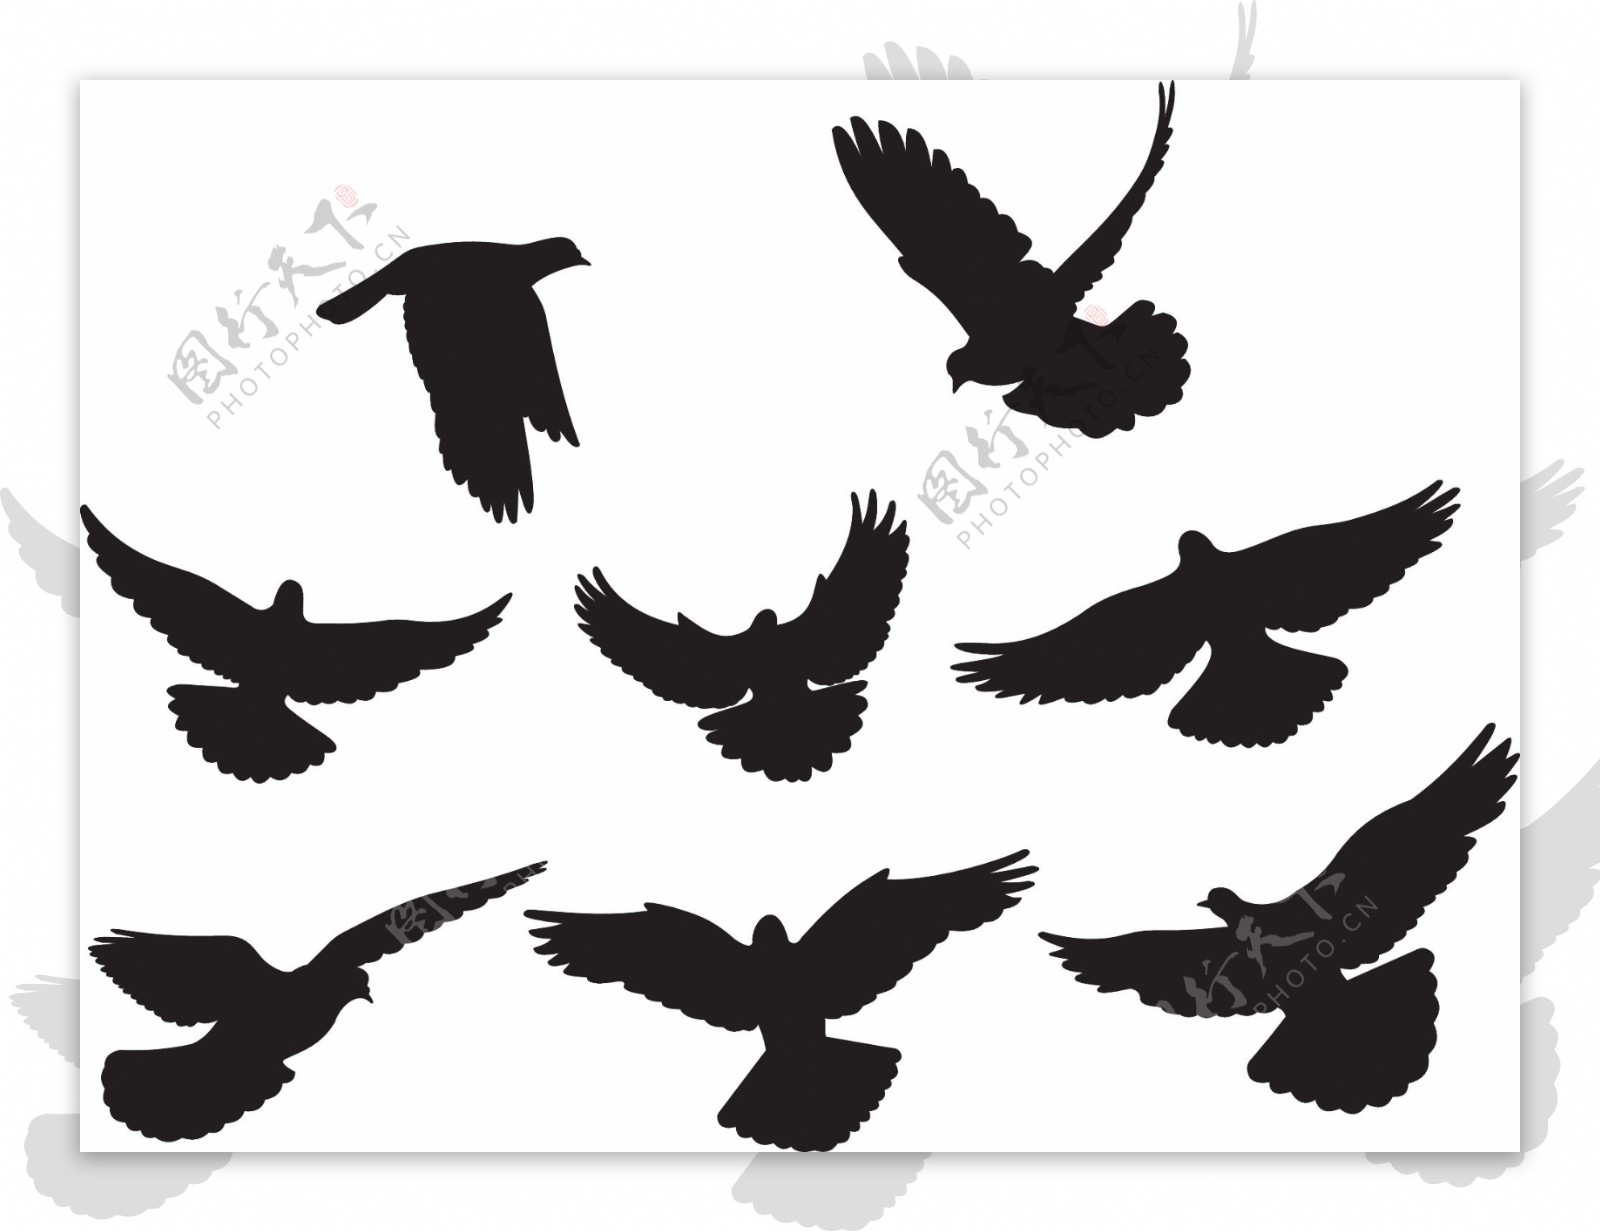 黑色和白色的鸽子或剪影矢量素材